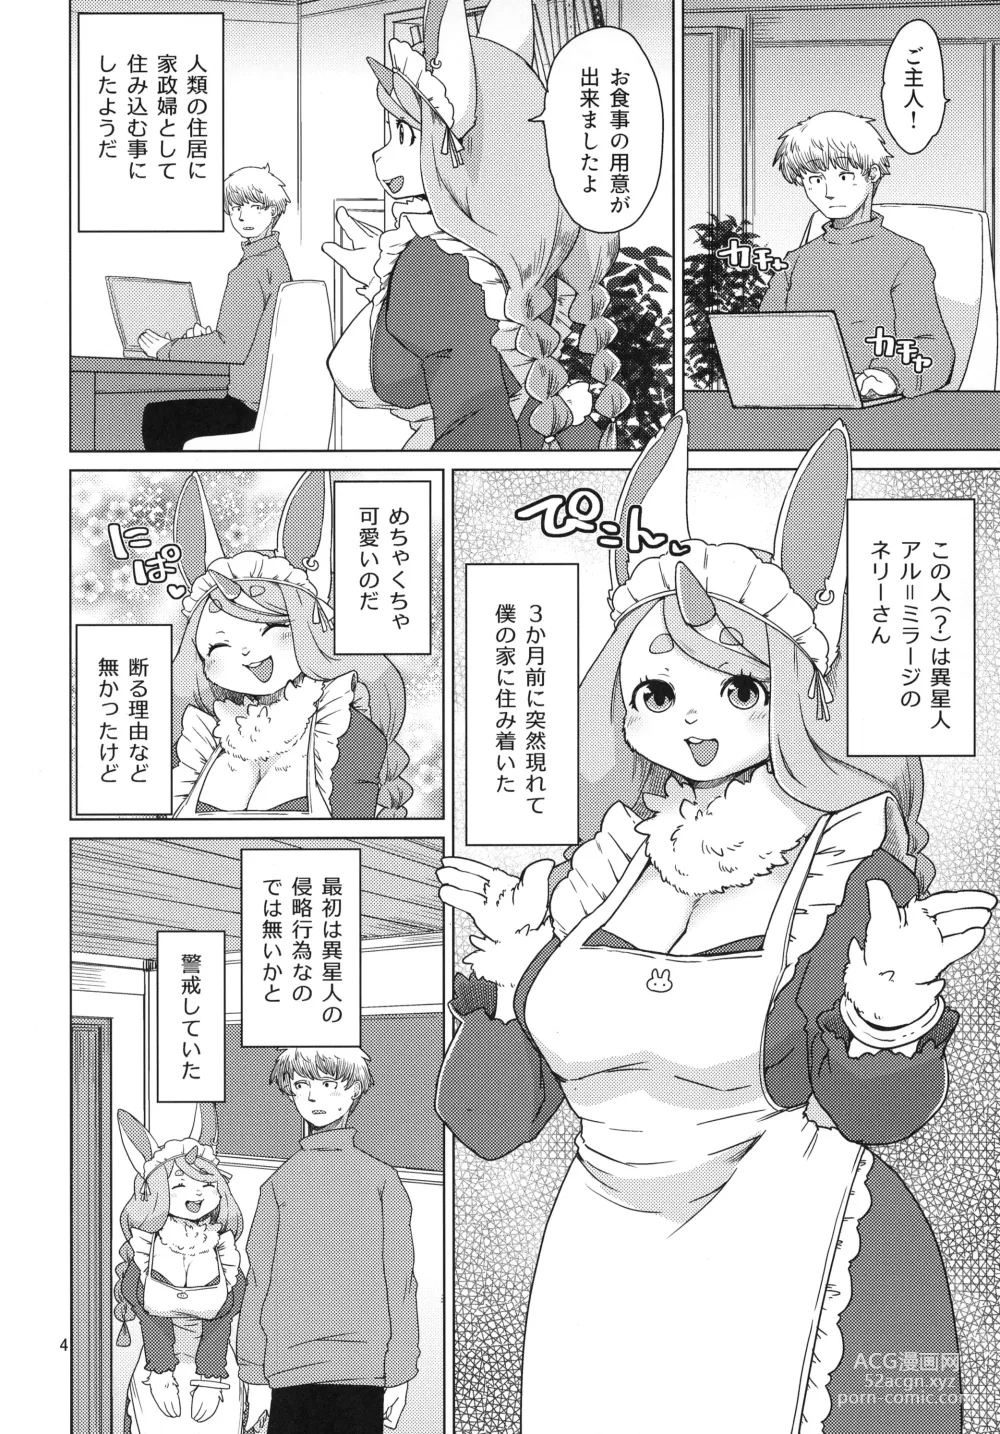 Page 4 of doujinshi Mofumofu Invasion